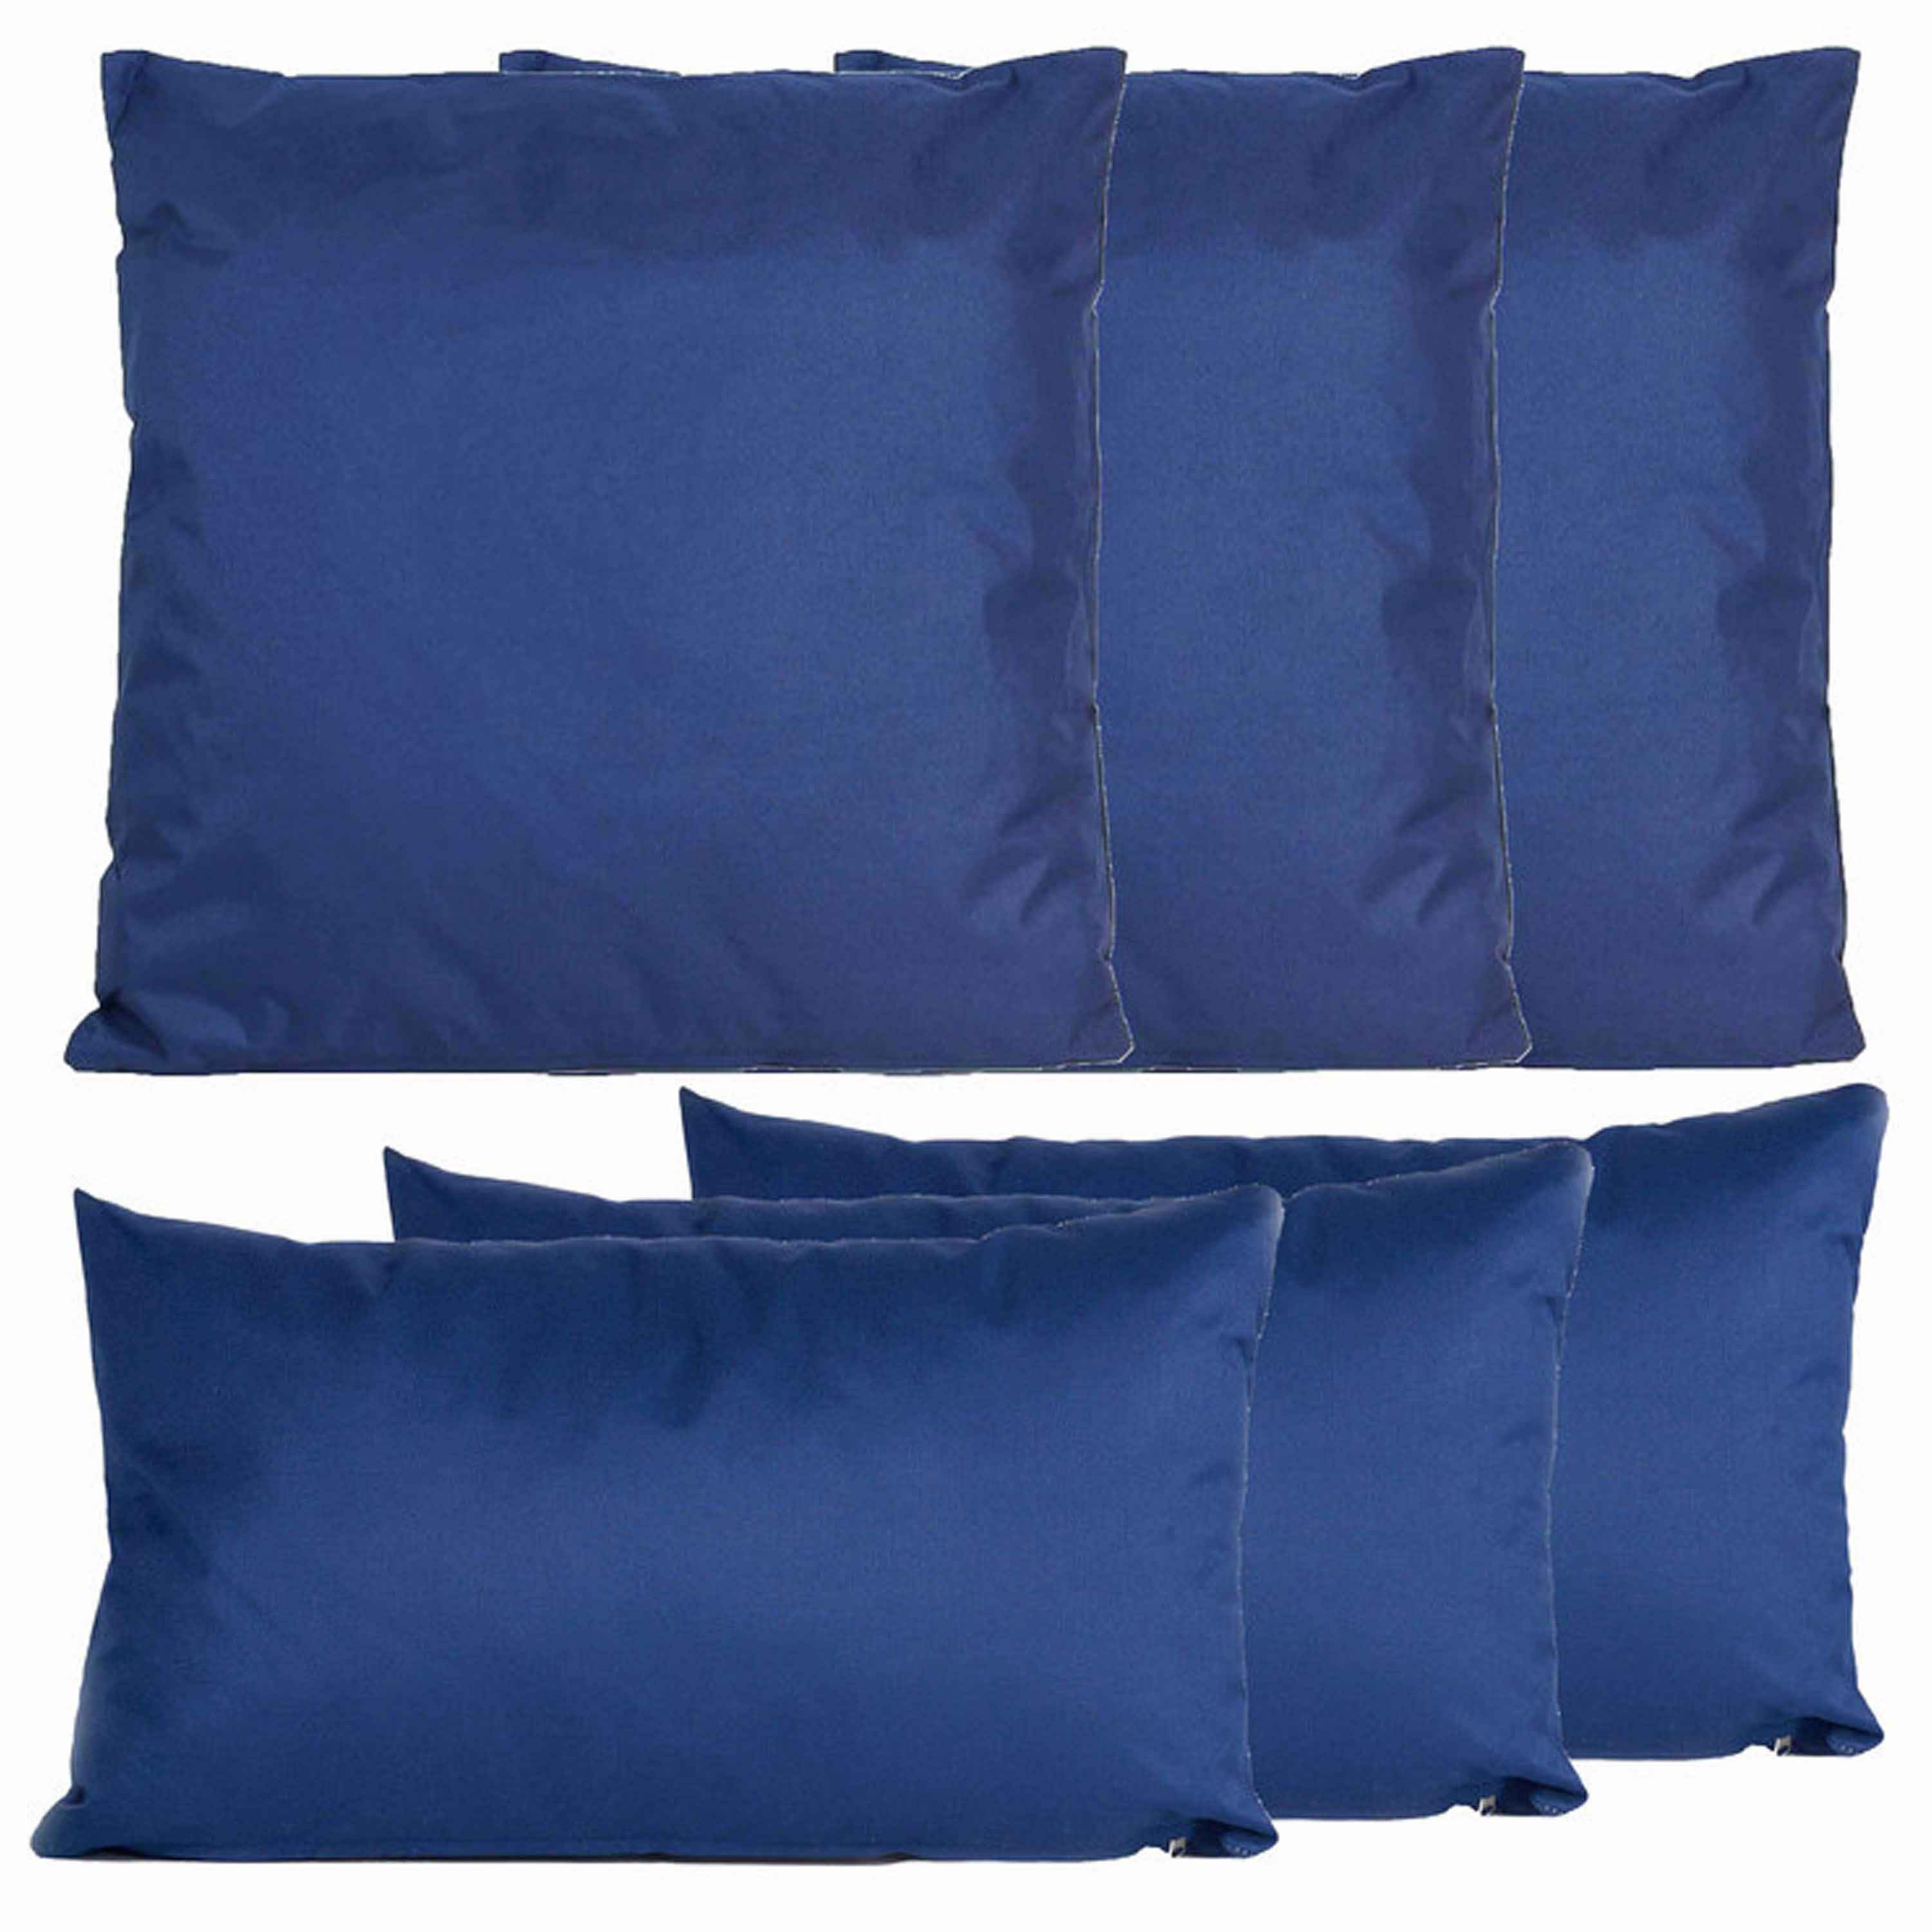 Bank-tuin kussens set binnen-buiten 6x stuks donkerblauw In 2 formaten laag-hoog